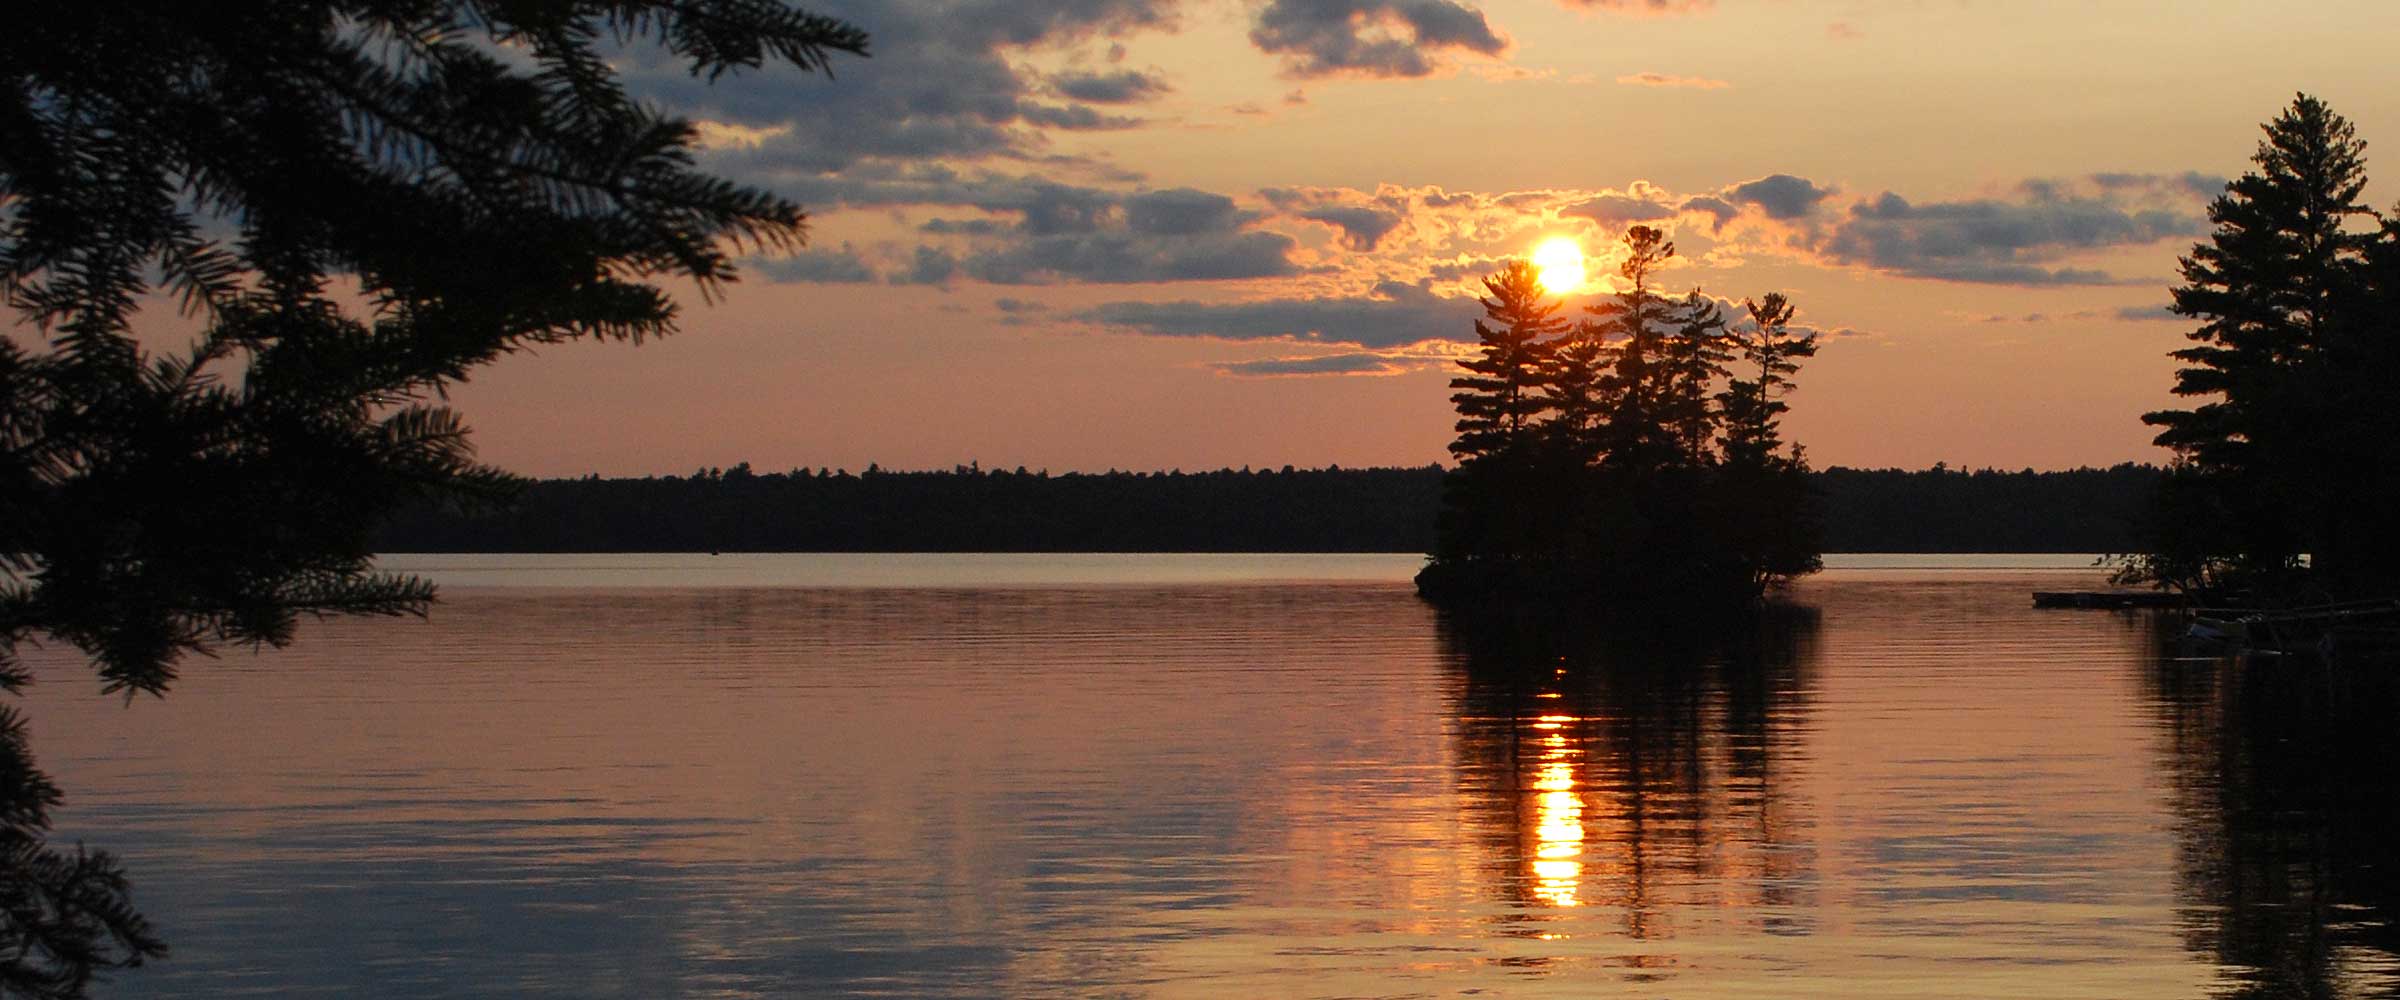 Sunset on the lake at Pickerel Bay Lodge